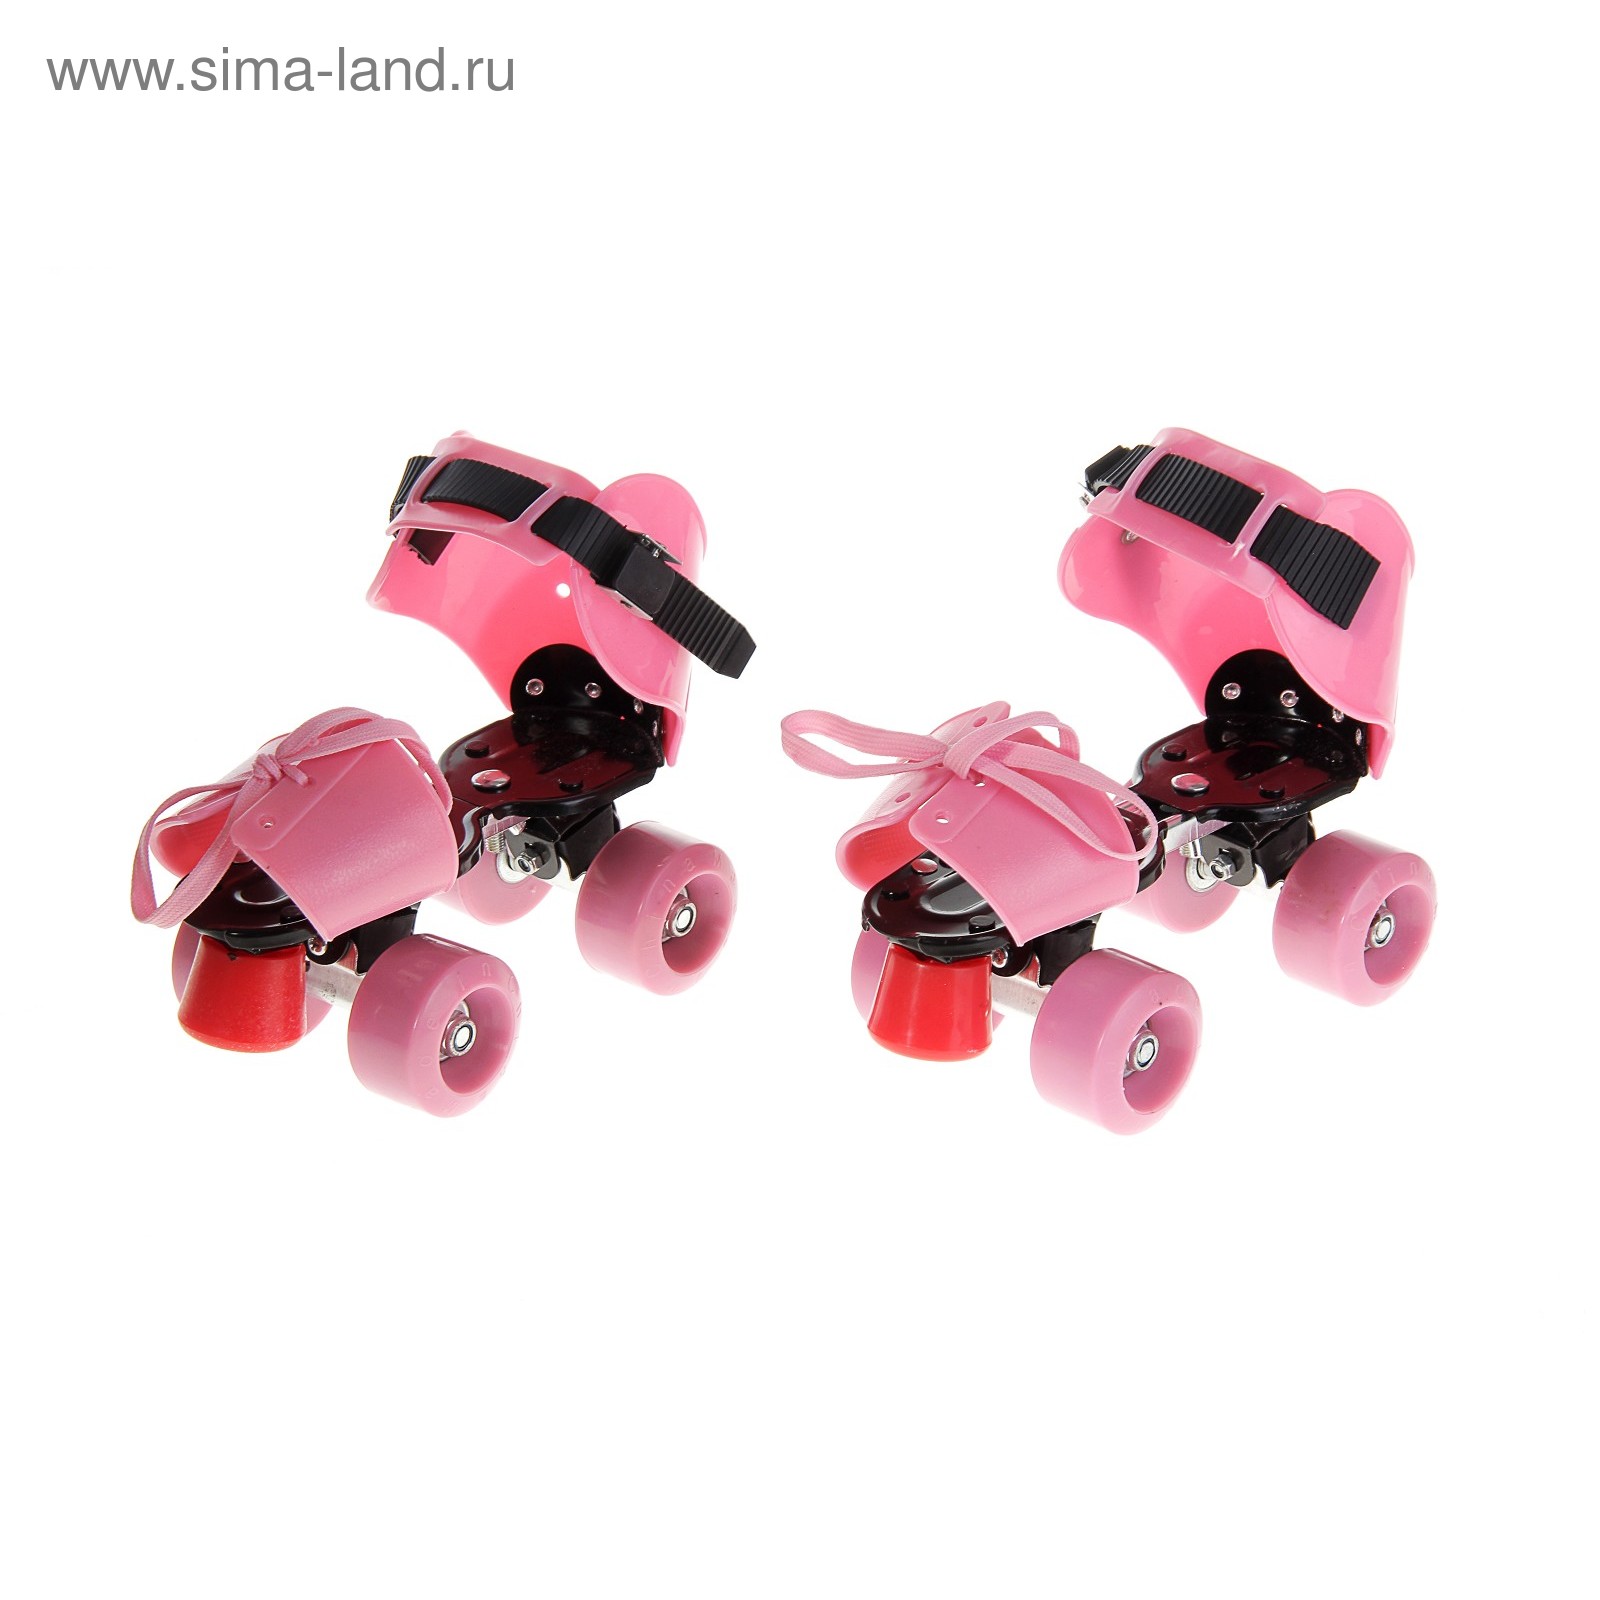 Ролики для обуви раздвижные, размер 19-25 см, колеса РVC d = 50 мм, цвет розовый